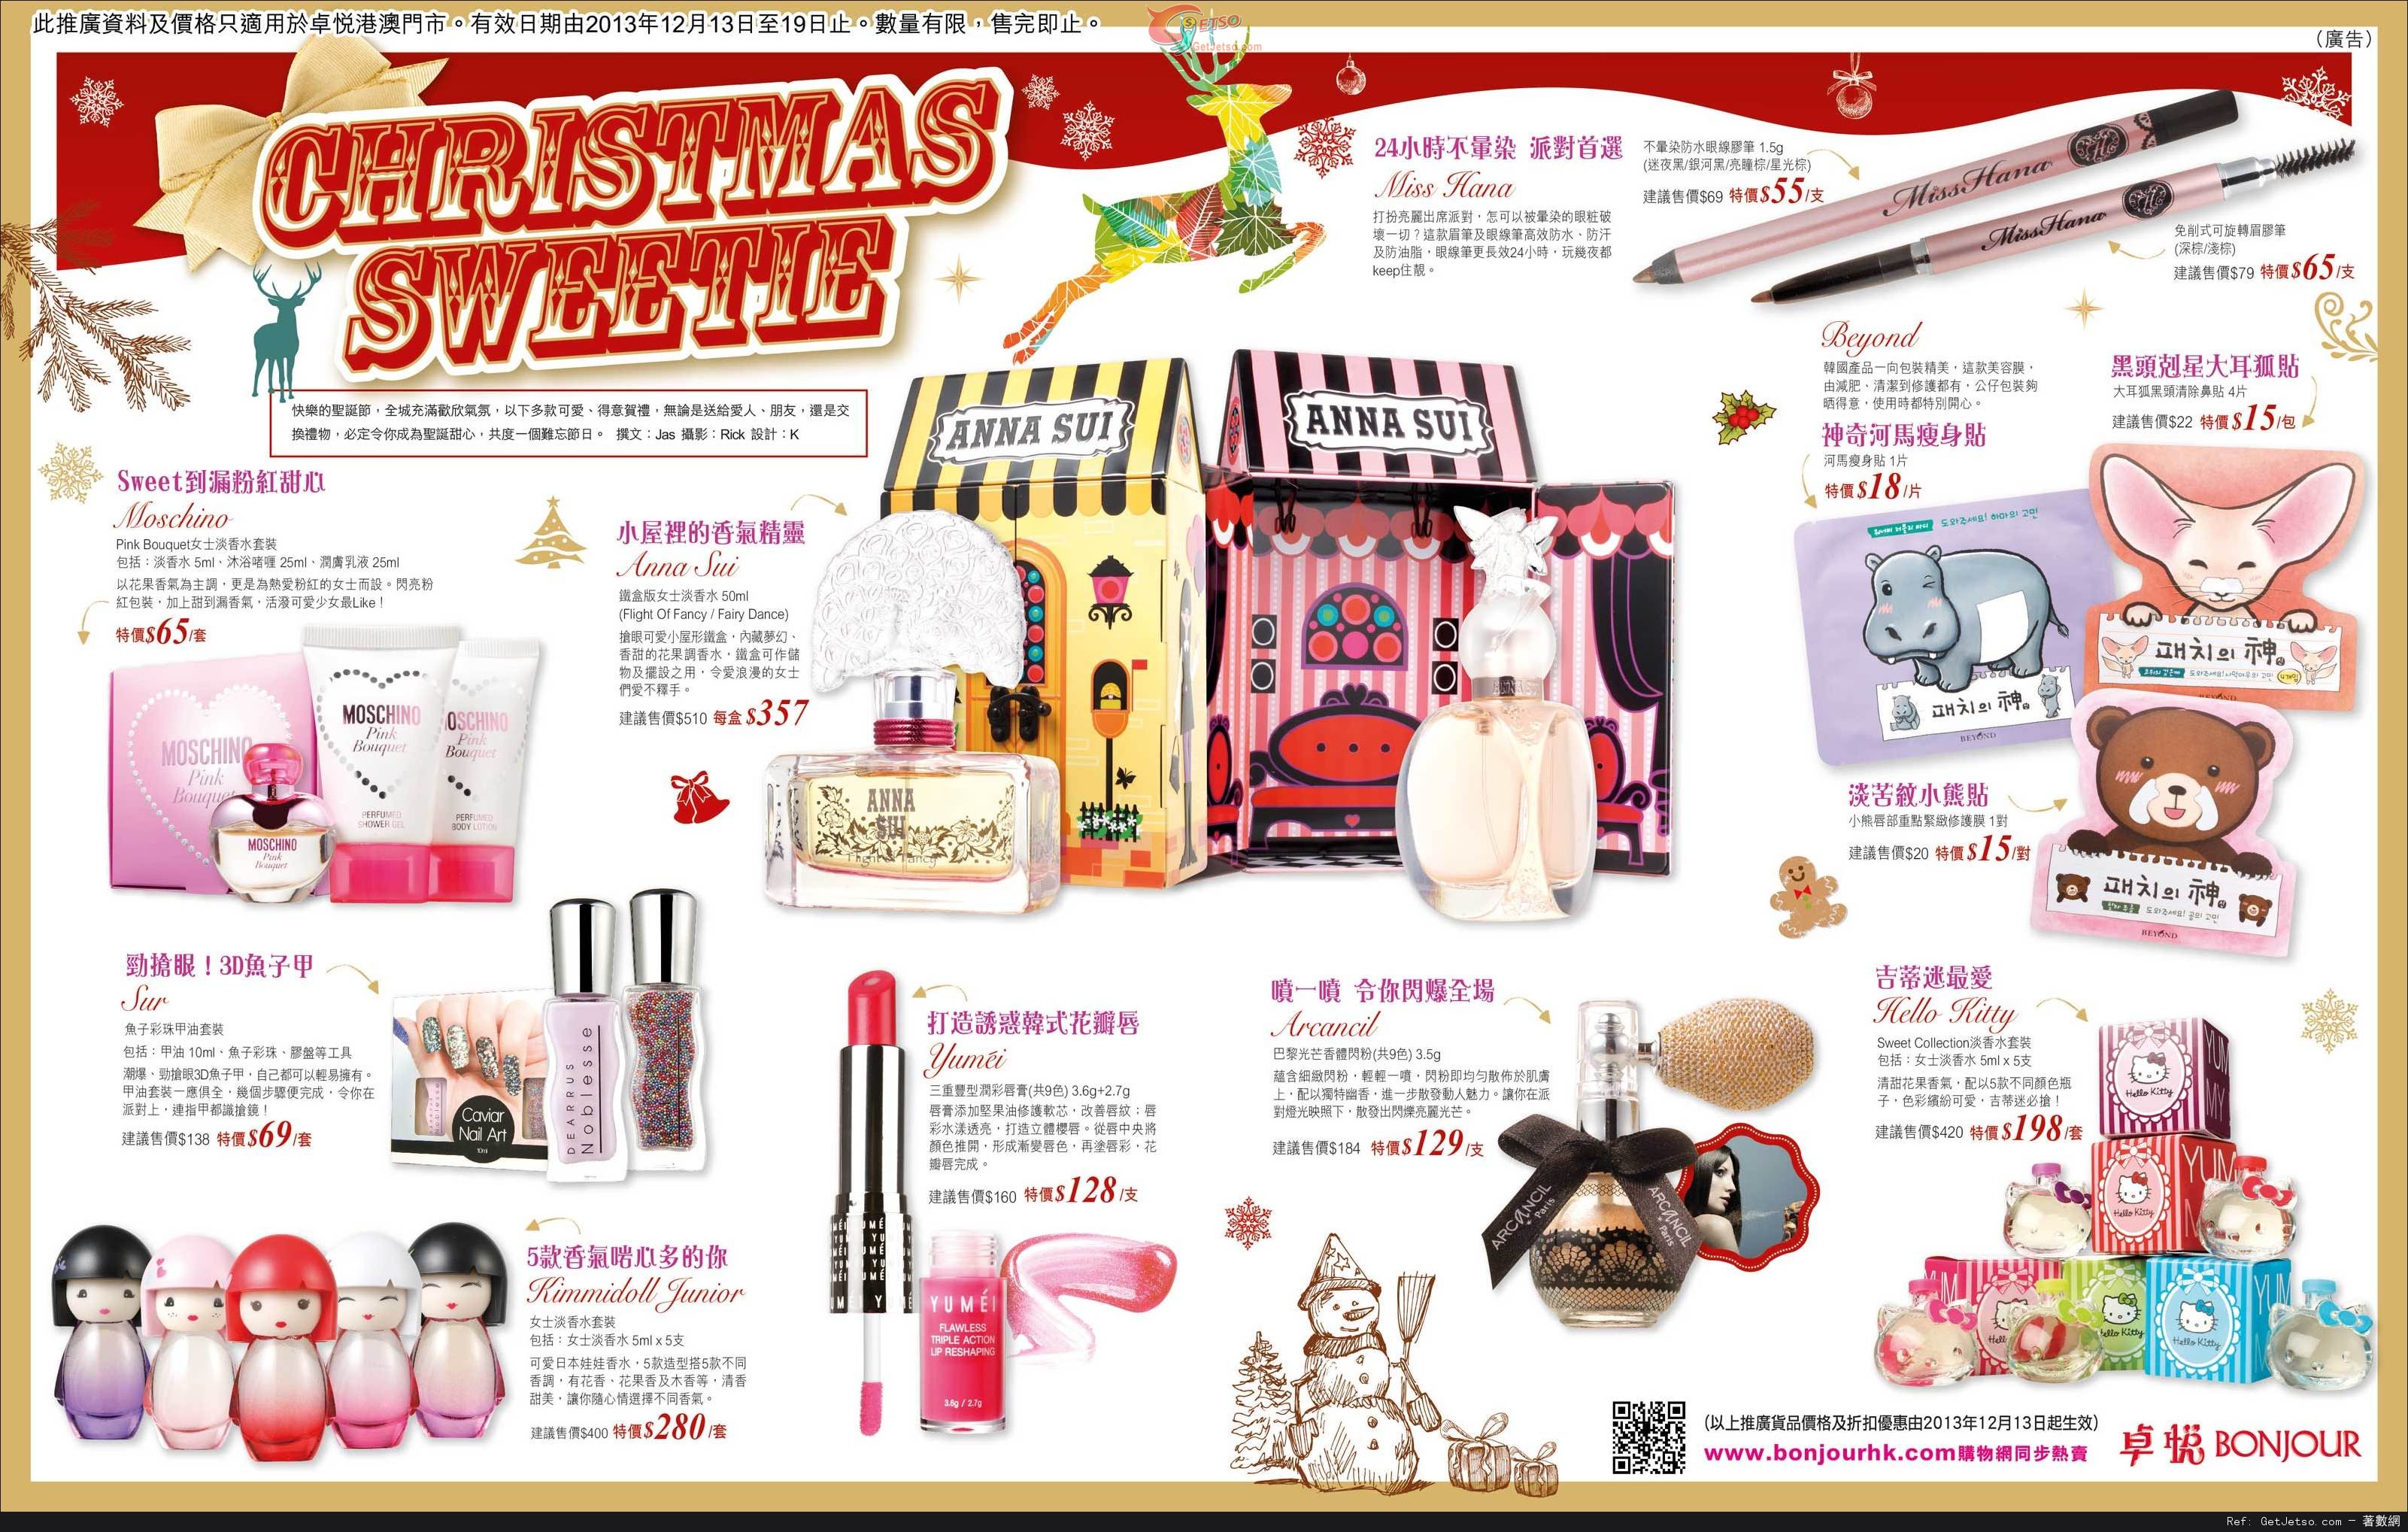 卓悅聖誕彩妝及護膚產品購買優惠(至13年12月19日)圖片1